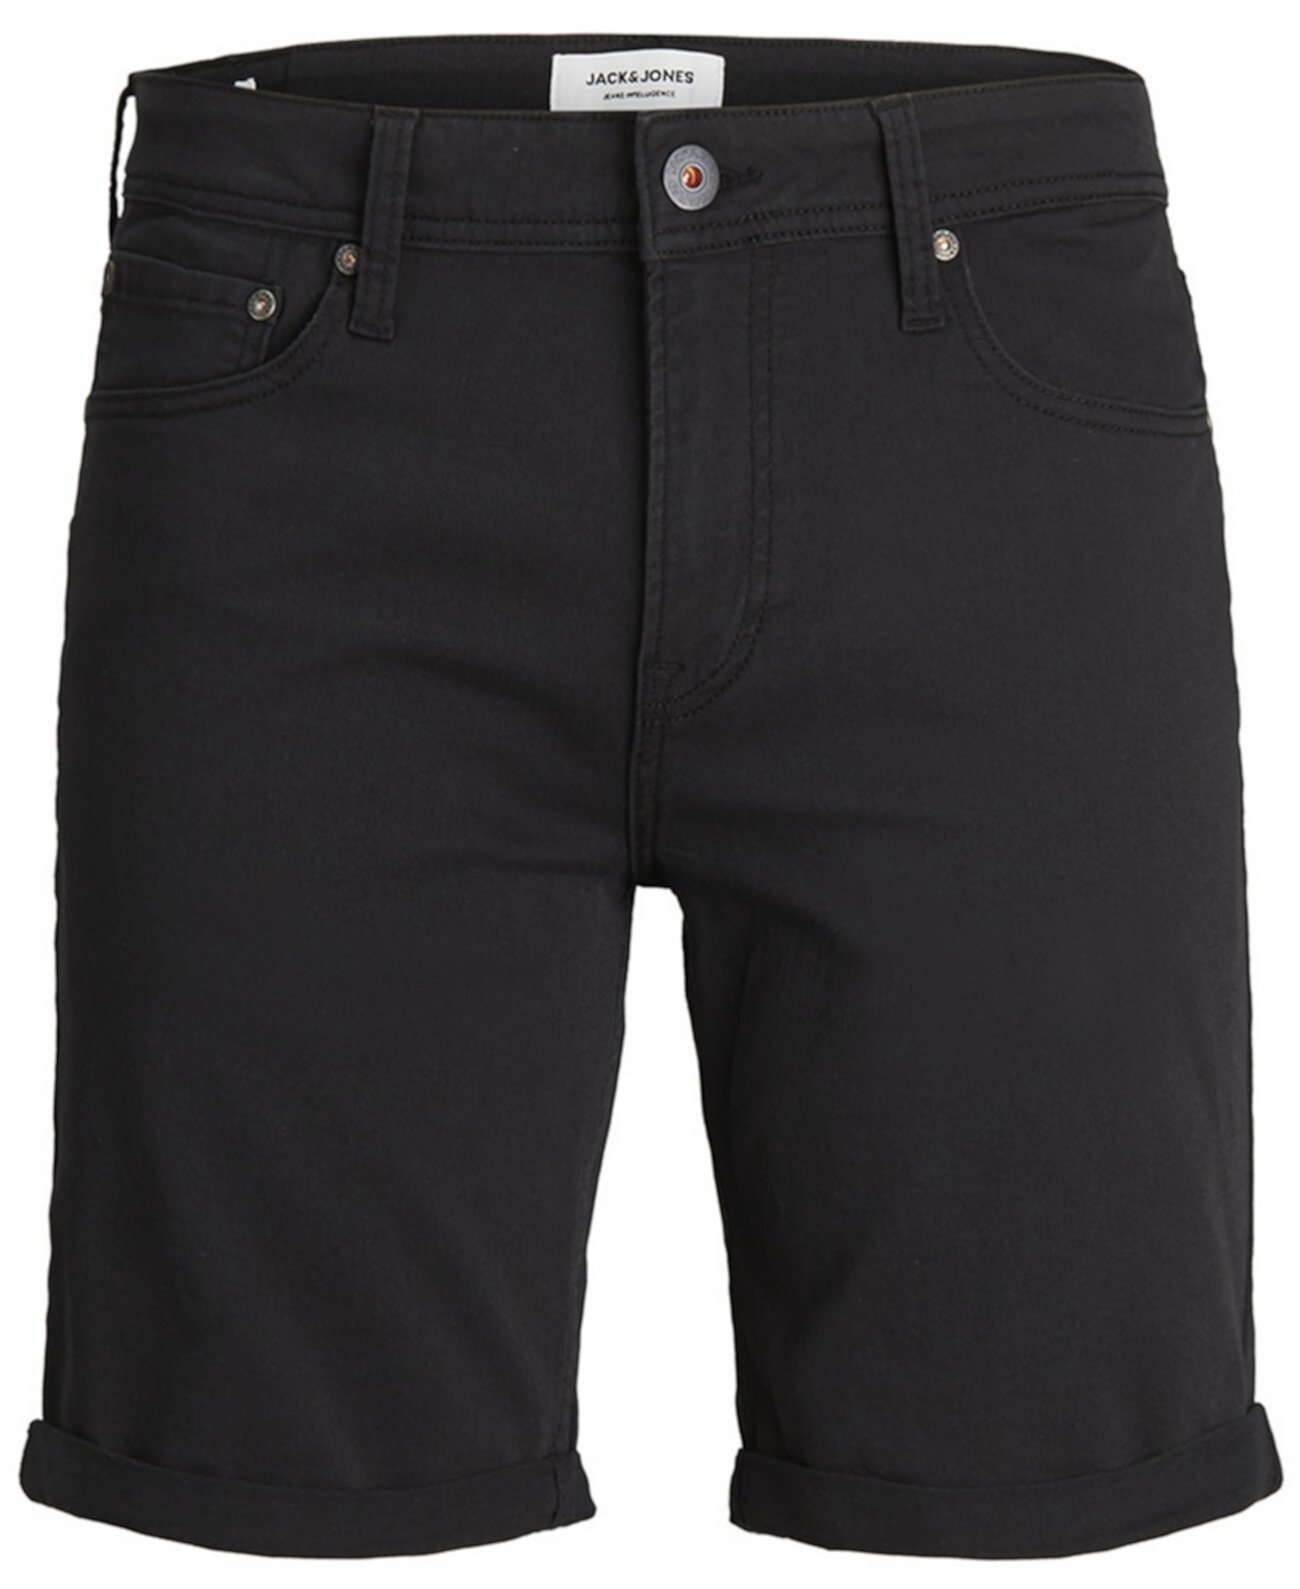 Мужские джинсовые шорты Rick Jack & Jones